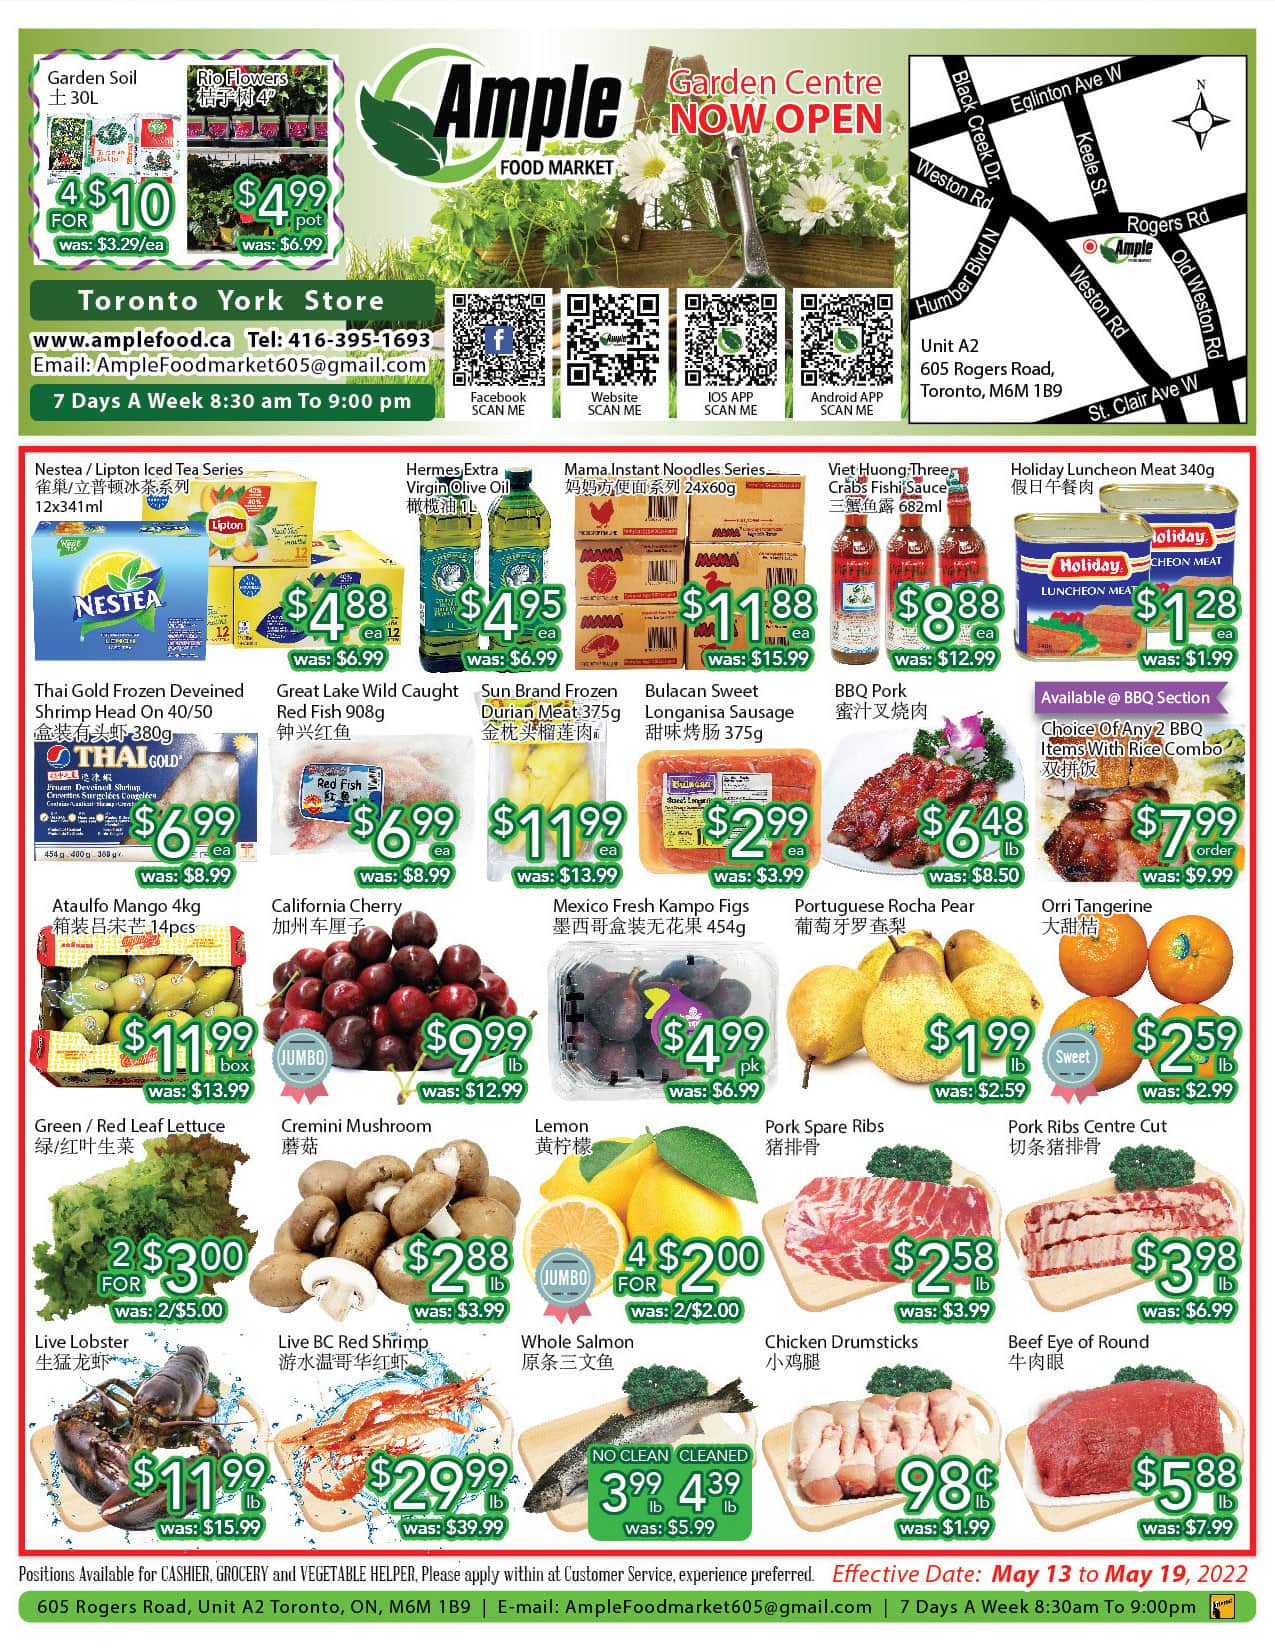 Image de la Promotion Ample Food Market Toronto York - Weekly Flyer Specials